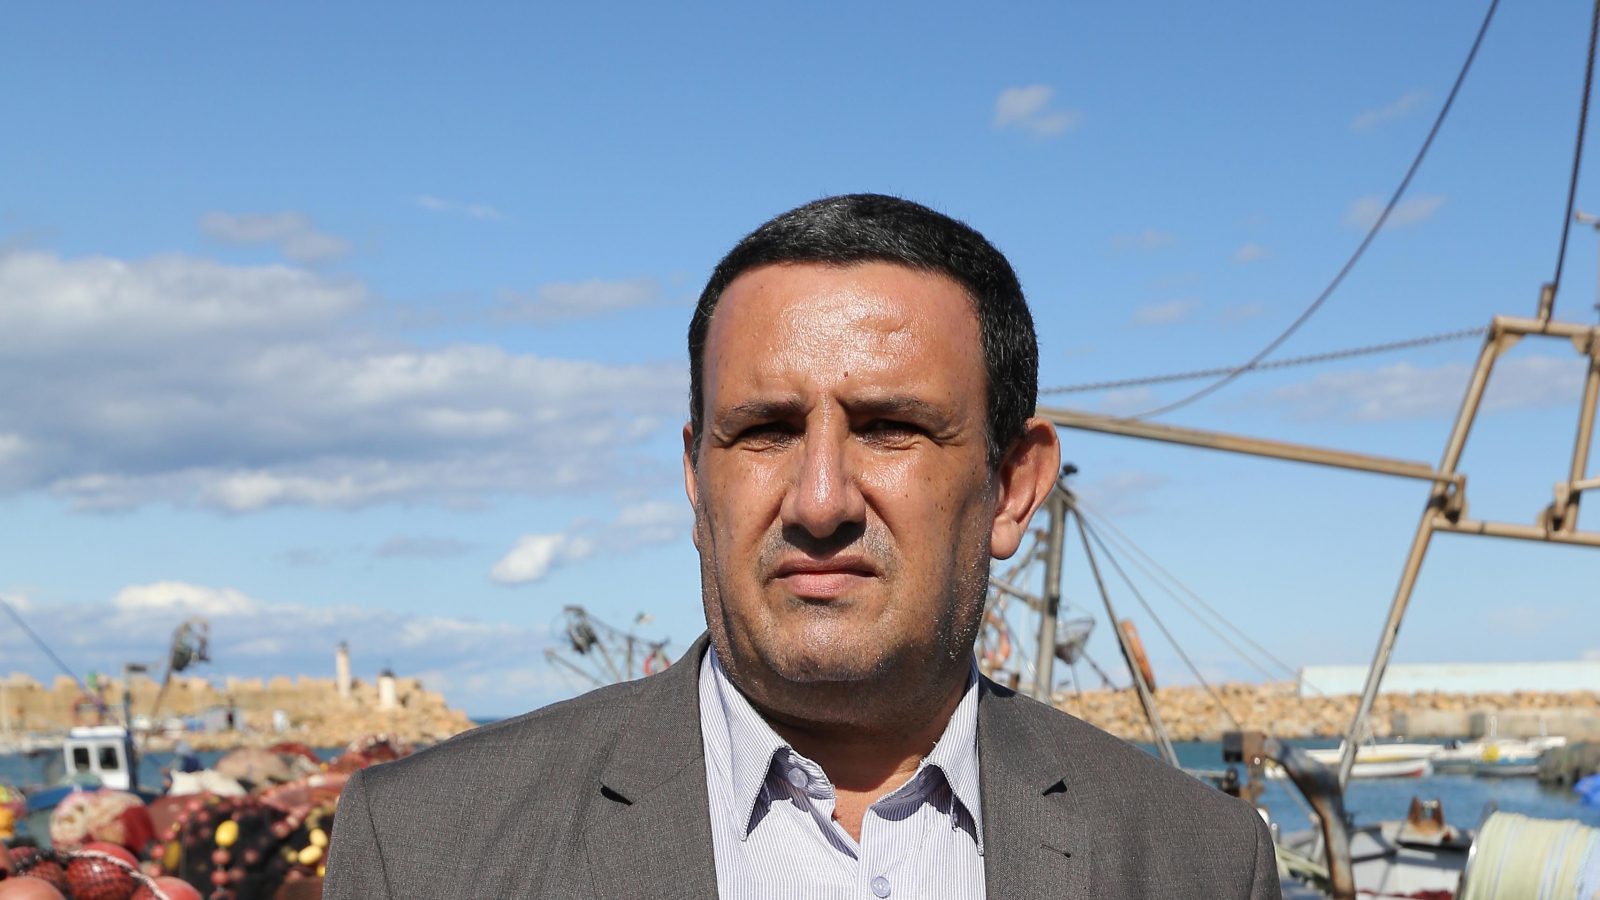  وحيد صالح، مدير مدرسة التّدريب التّقني للصيد البحري وتربية المائيّات في شرشال